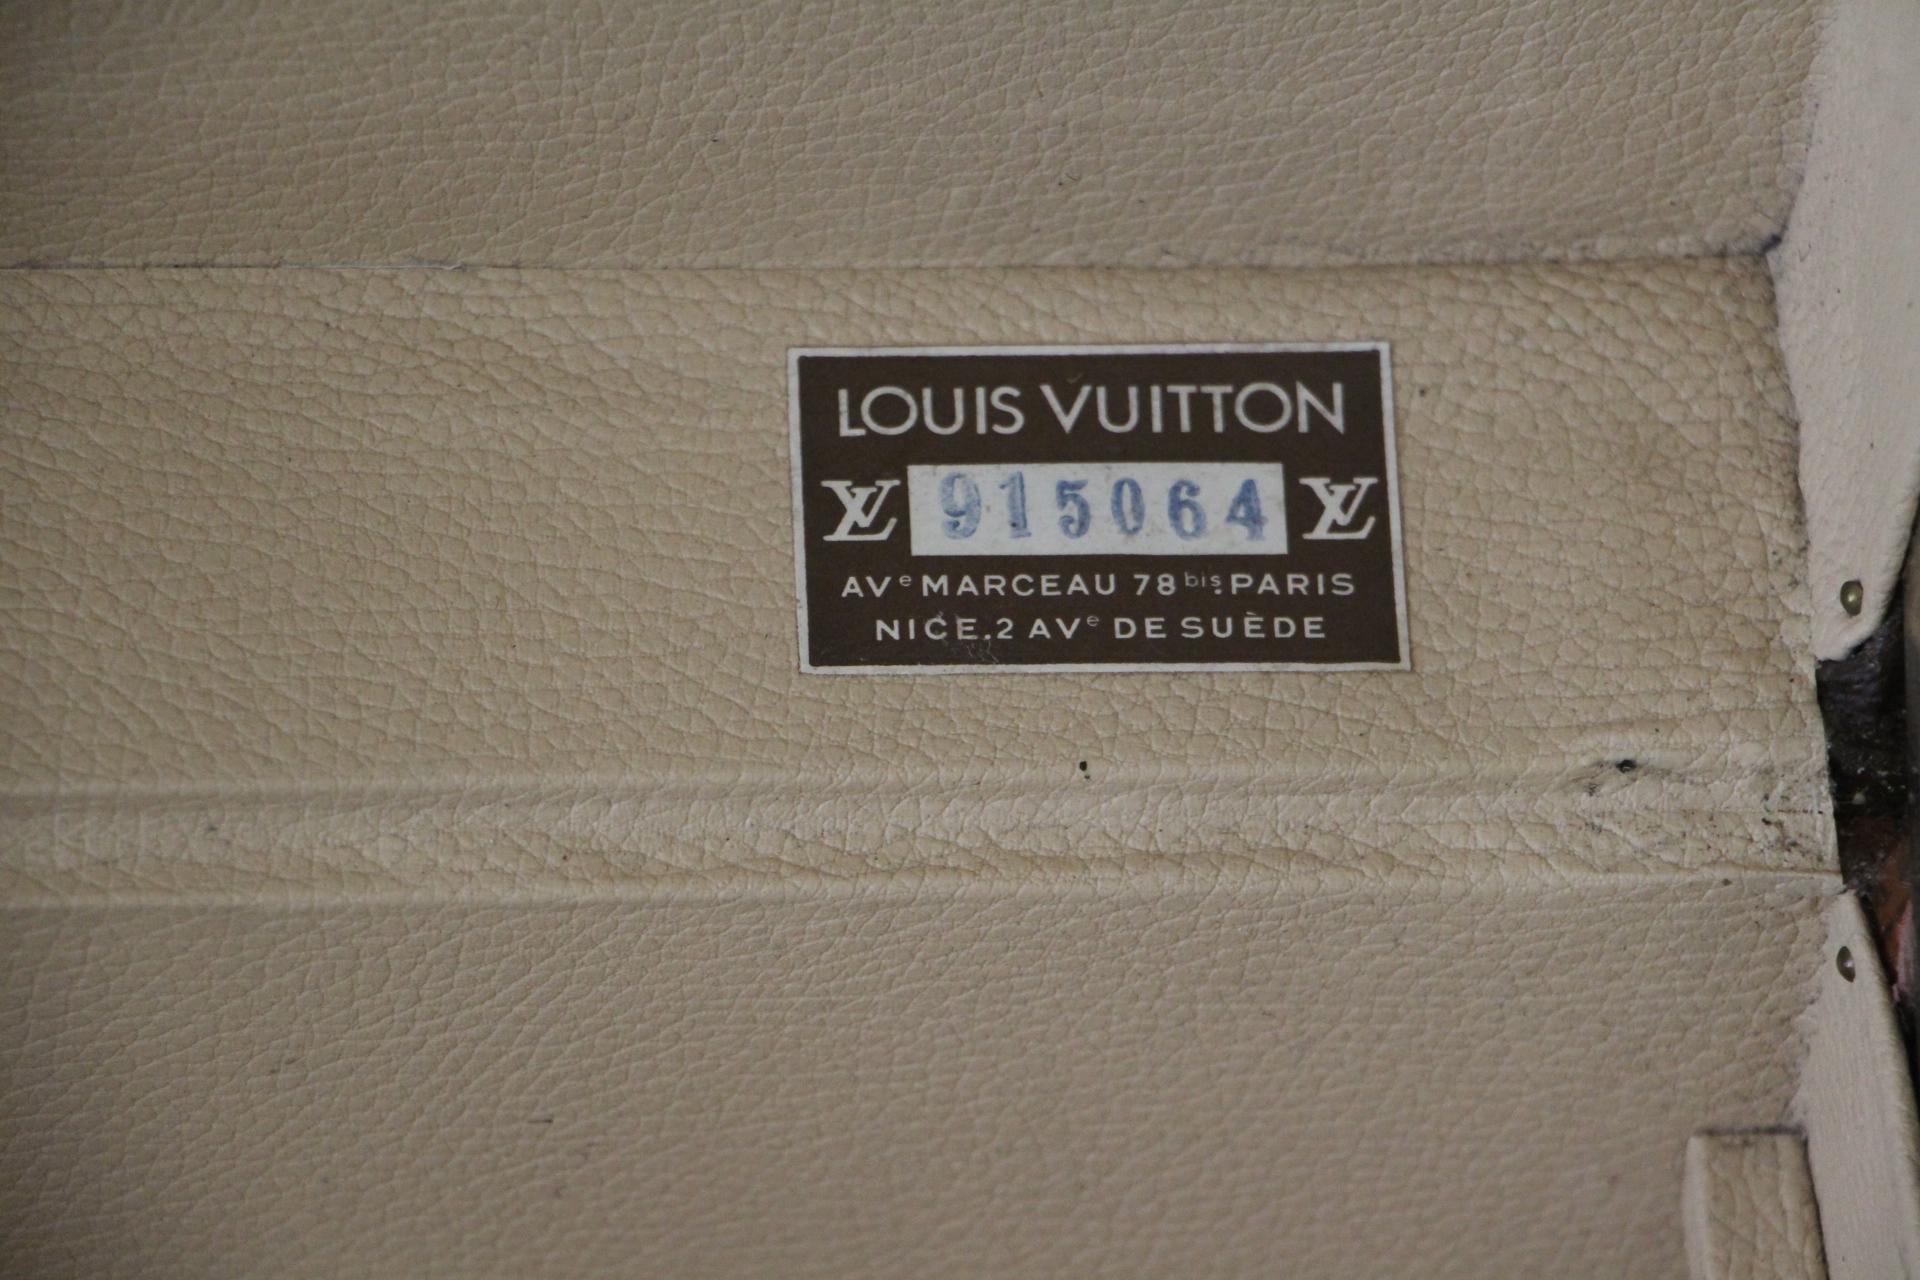 Louis Vuitton Suitcase, Alzer 60 Louis Vuitton Suitcase, Vuitton Rigid Suitcase 11